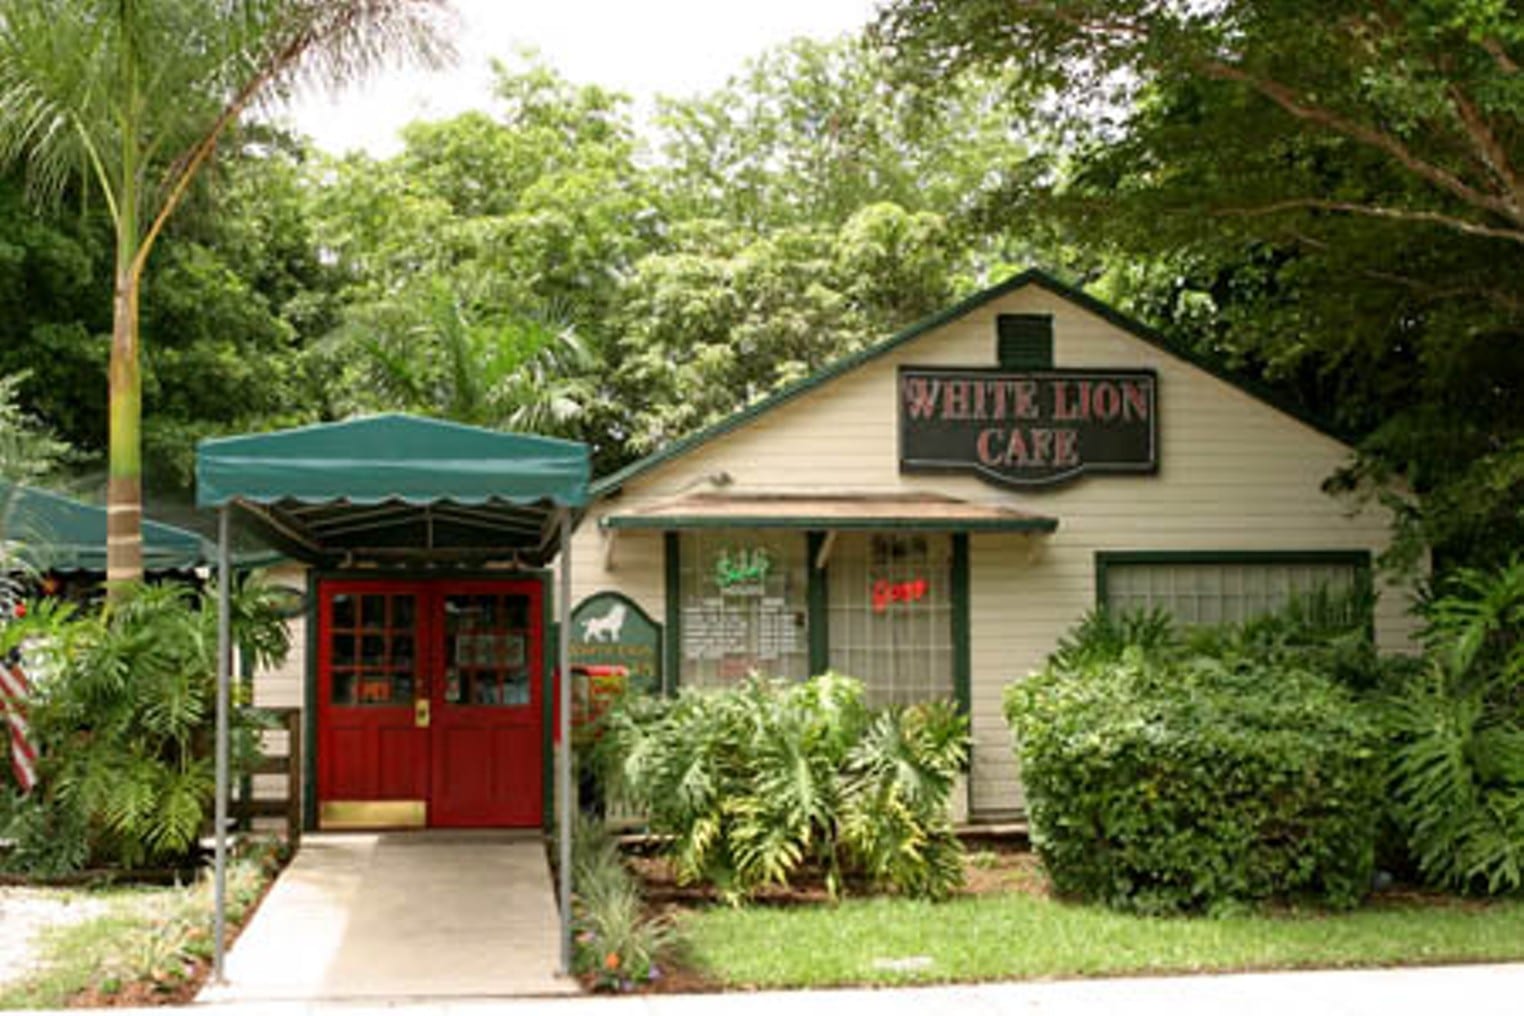 White Lion Cafe exterior